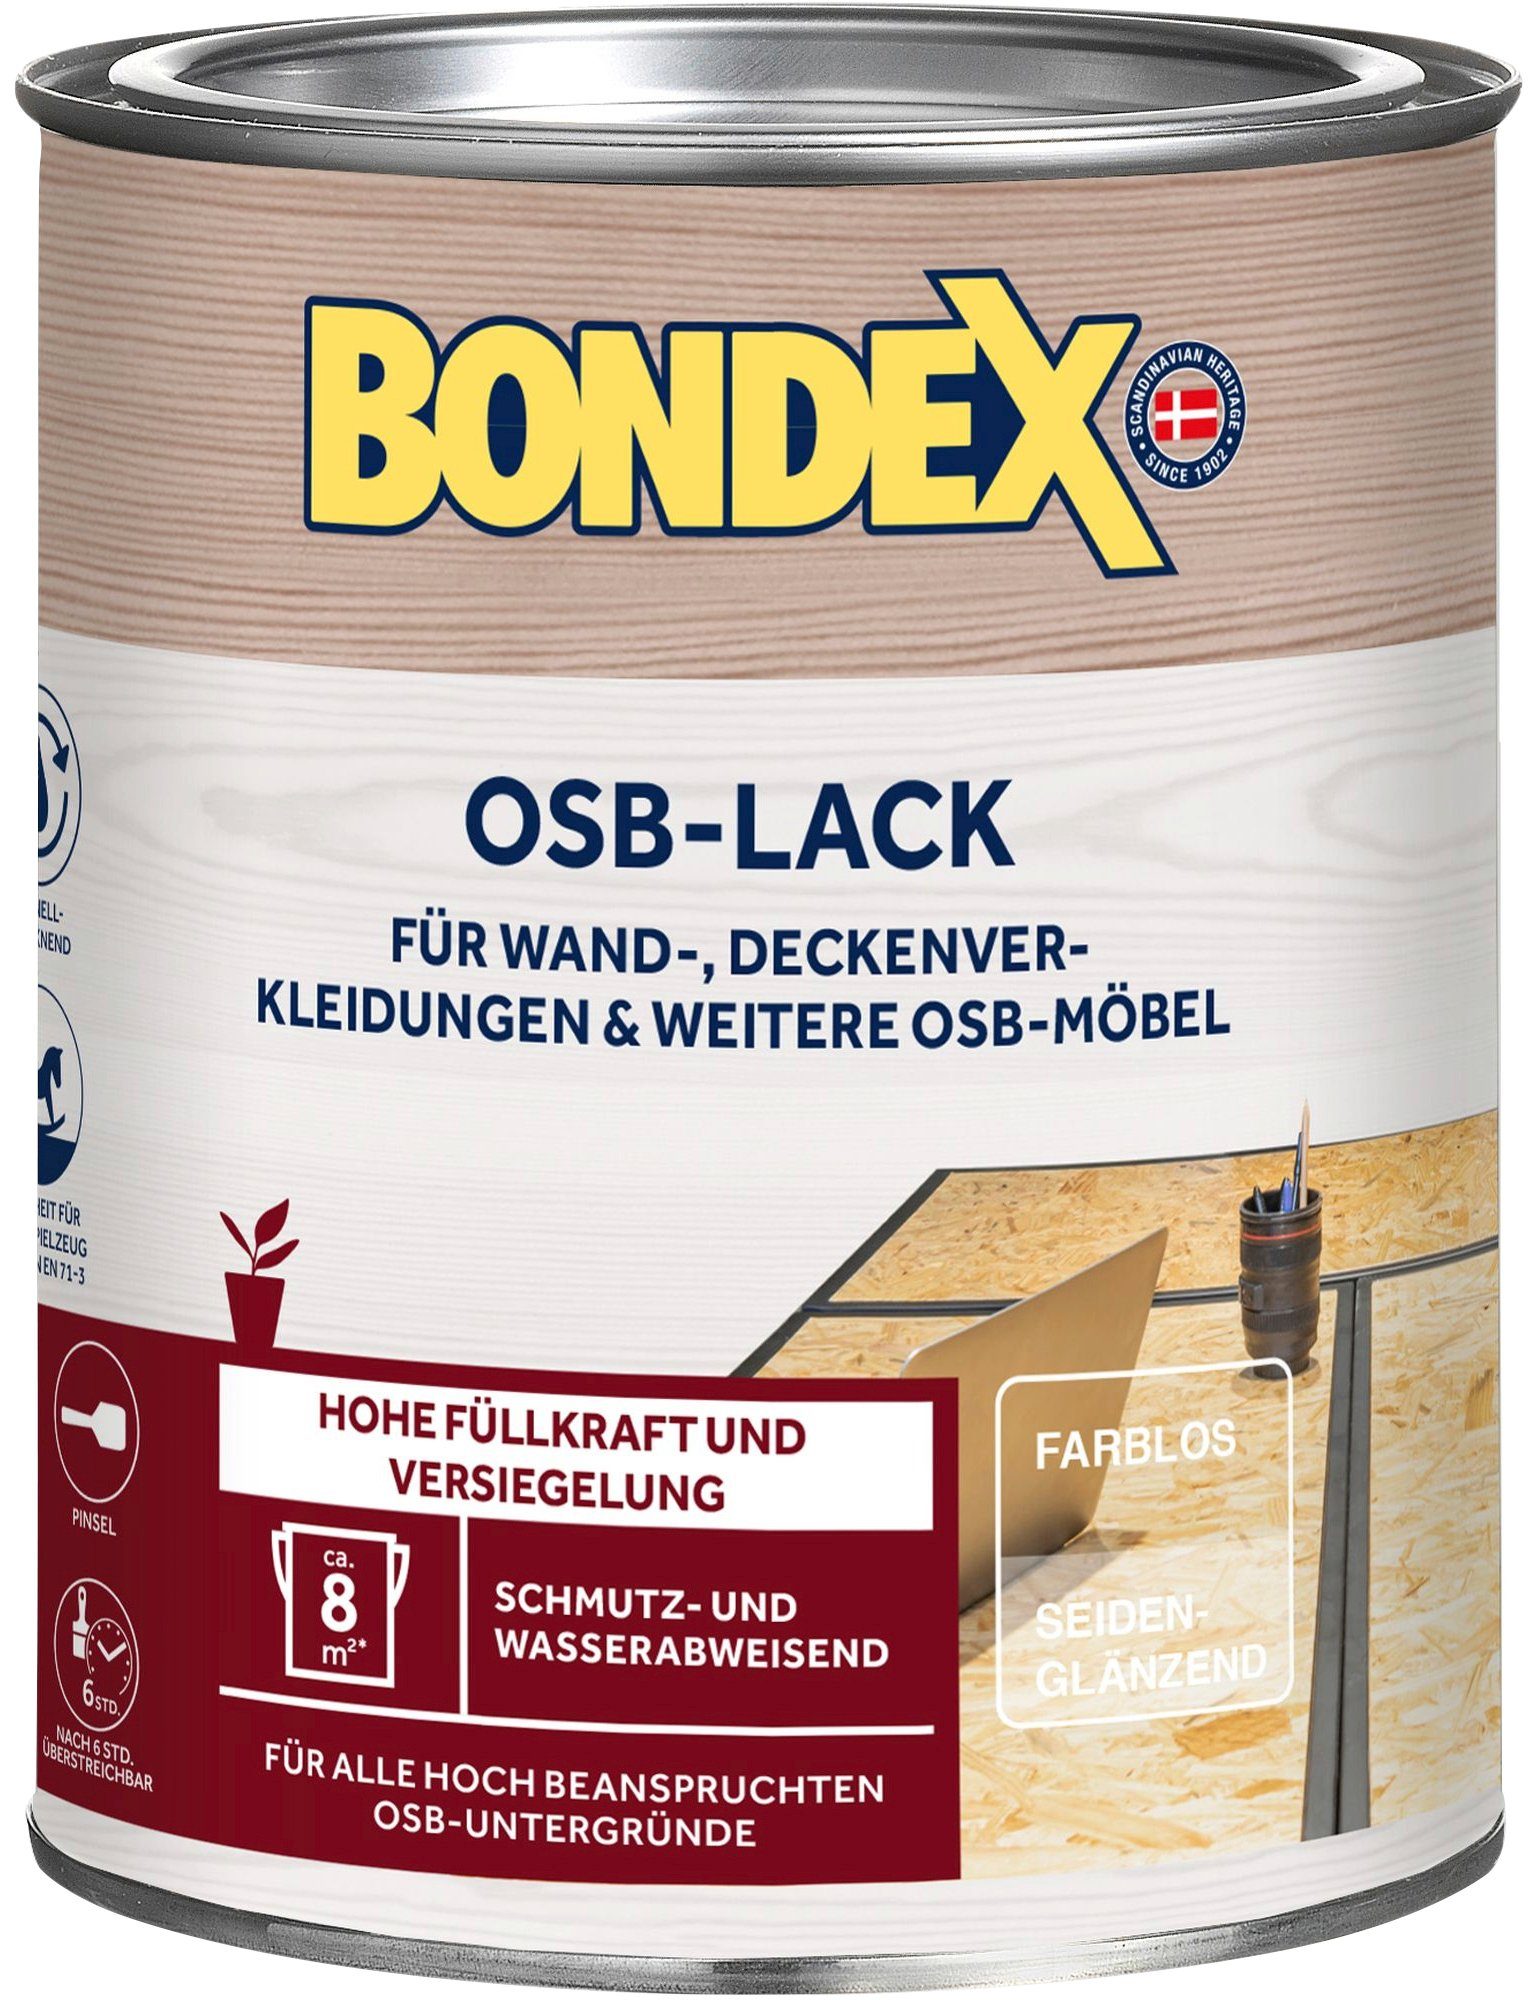 Bondex Holzlack OSB-LACK, Farblos Seidenglänzend, Liter / Inhalt 2,5